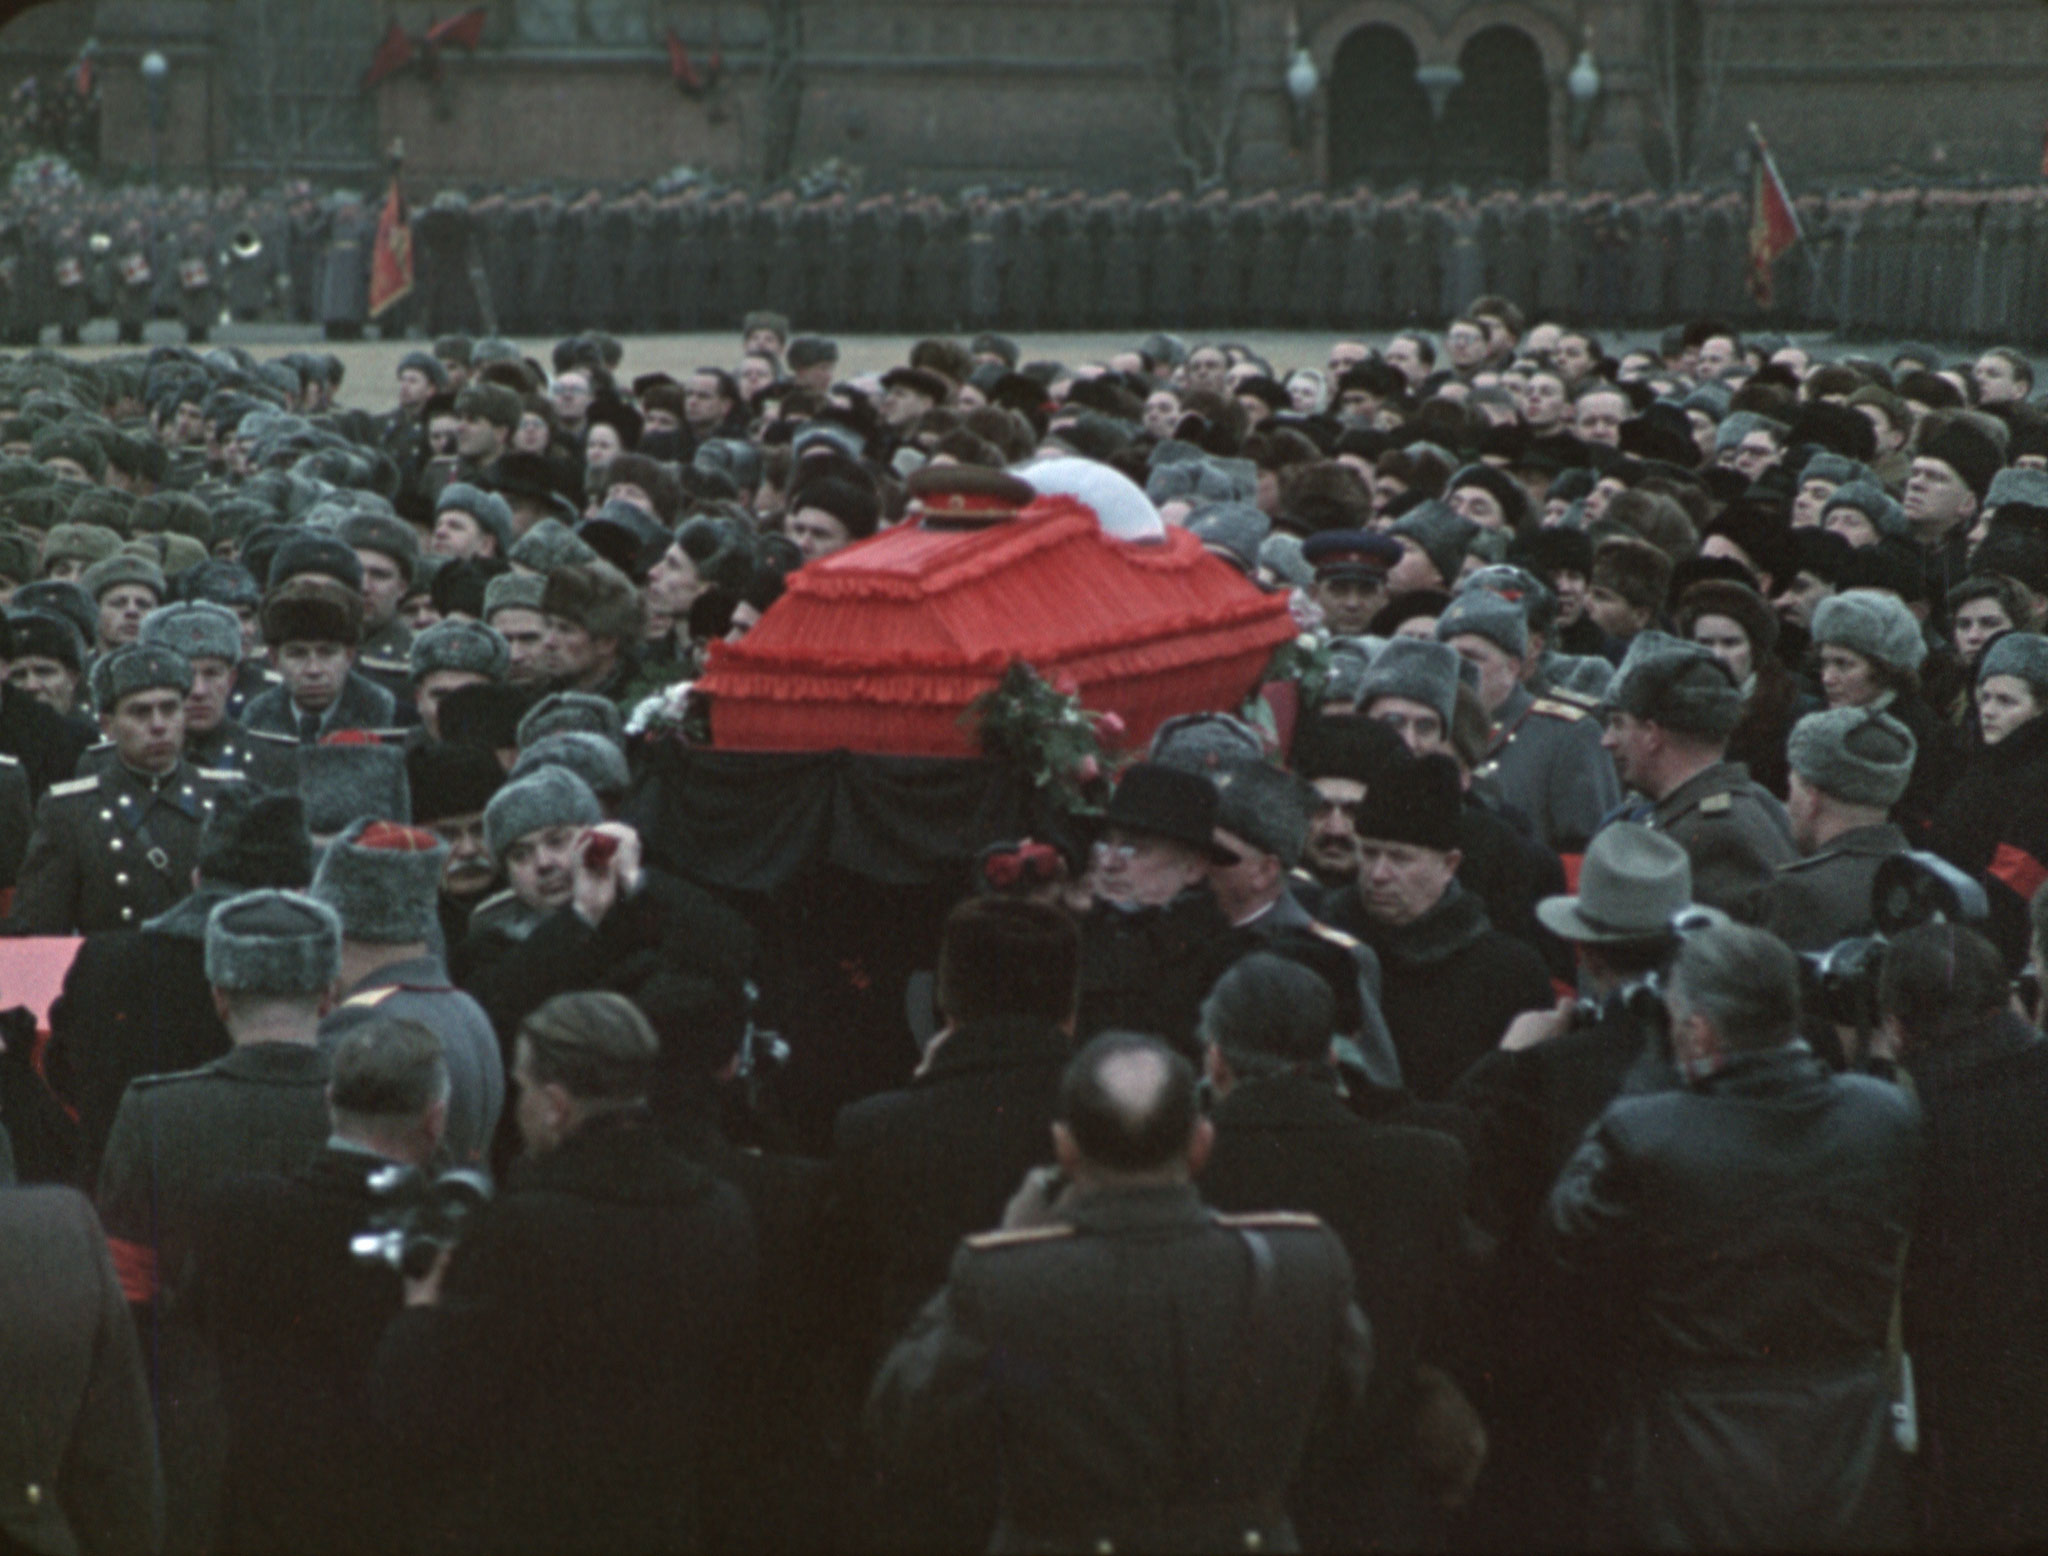 Площадь прощания. Похороны Сталина 1953. Смерть Сталина 1953. Сталин Иосиф Виссарионович похороны Сталина. 1953 Москва похороны Сталина.